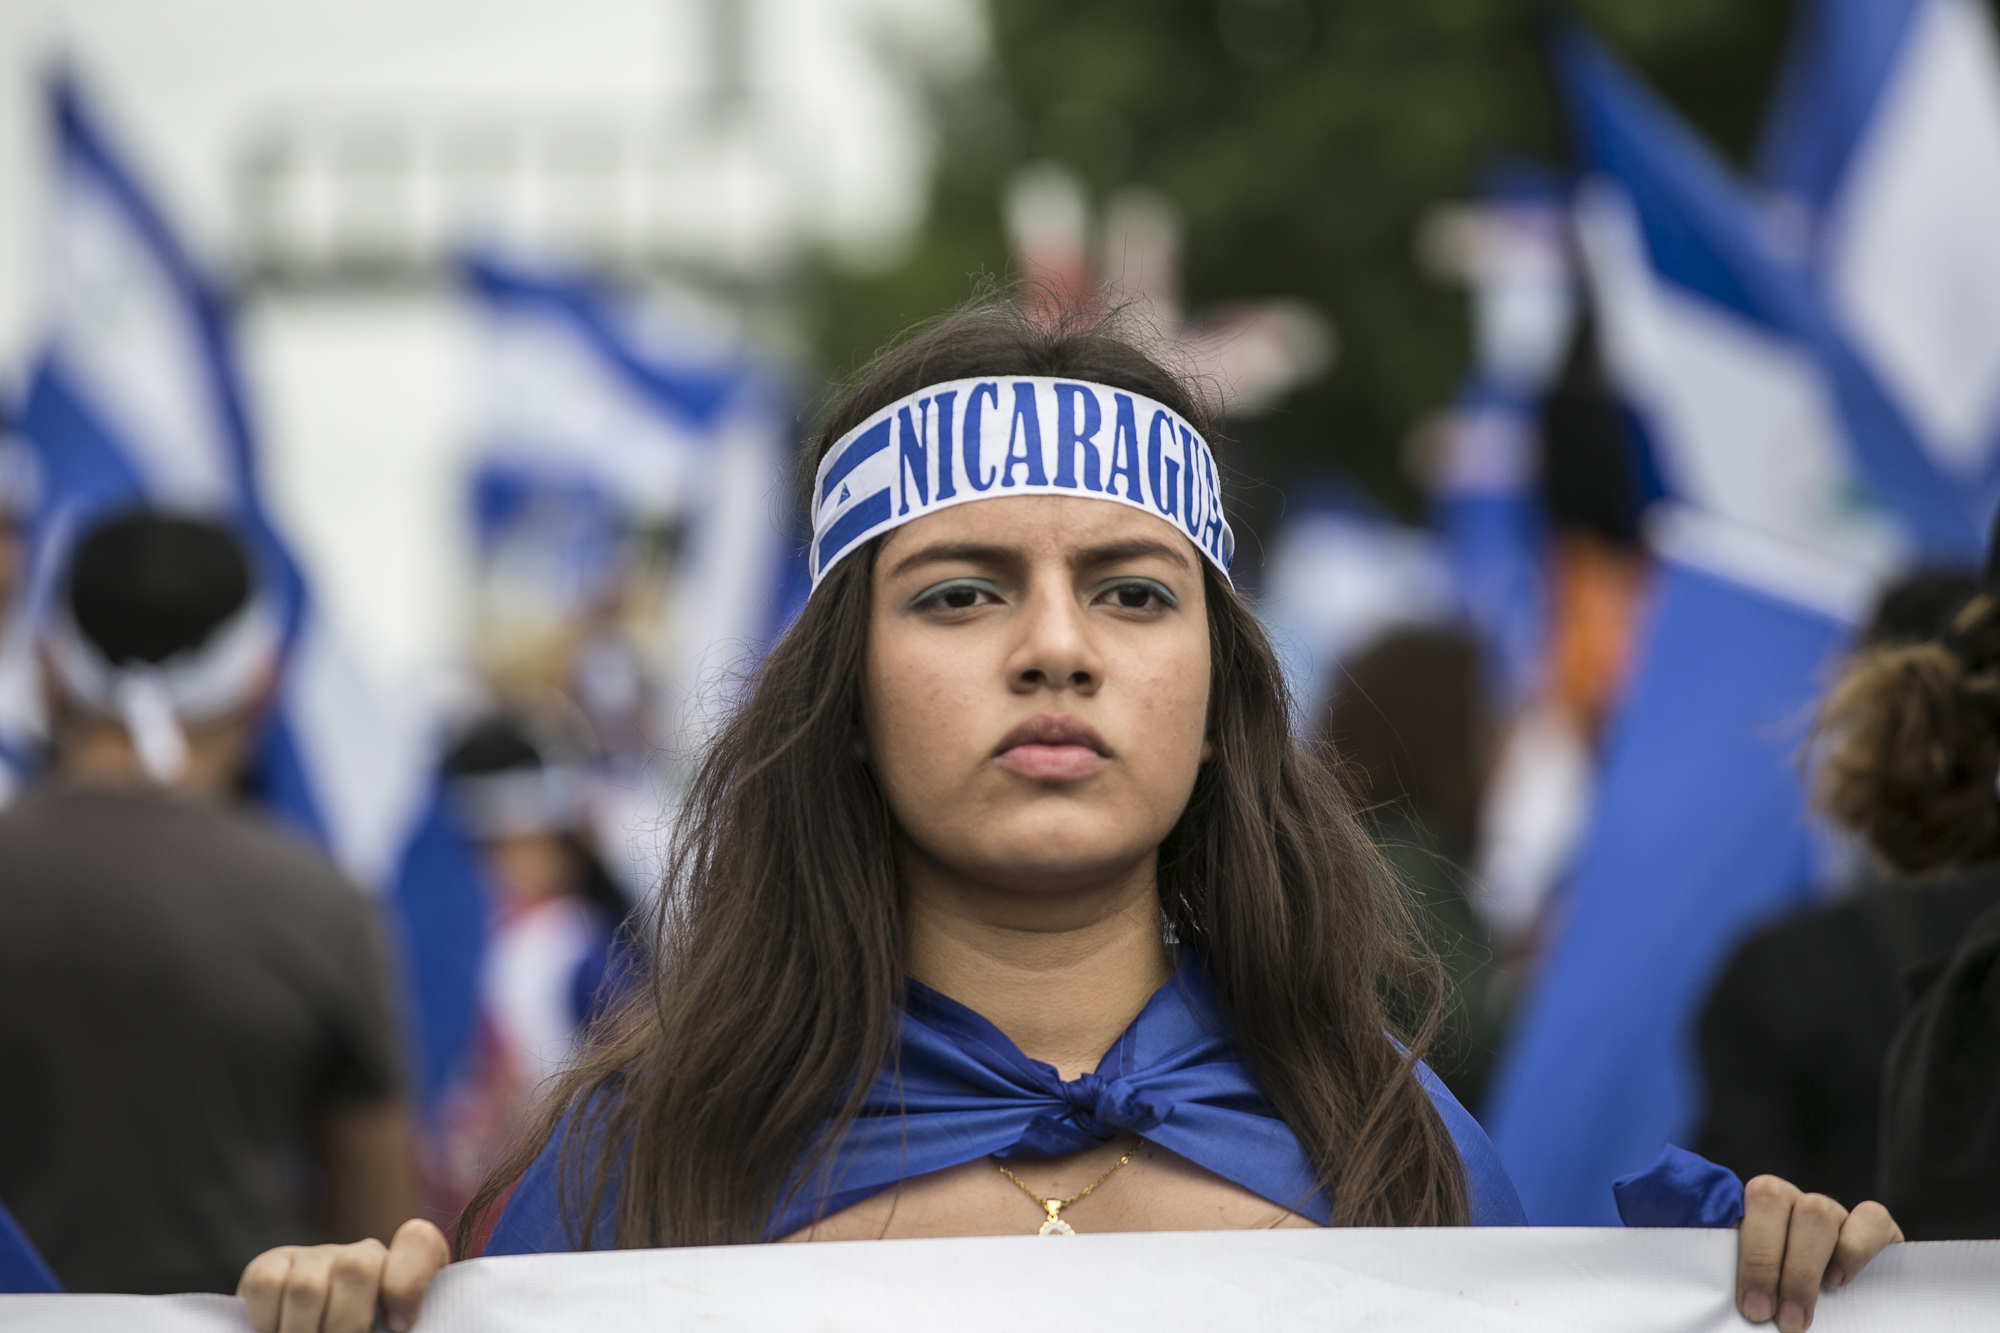 En kvinne går i demonstrasjon. Hun har flagget til Nicaragua rundt kroppen og et pannebånd hvor det står Nicaragua 